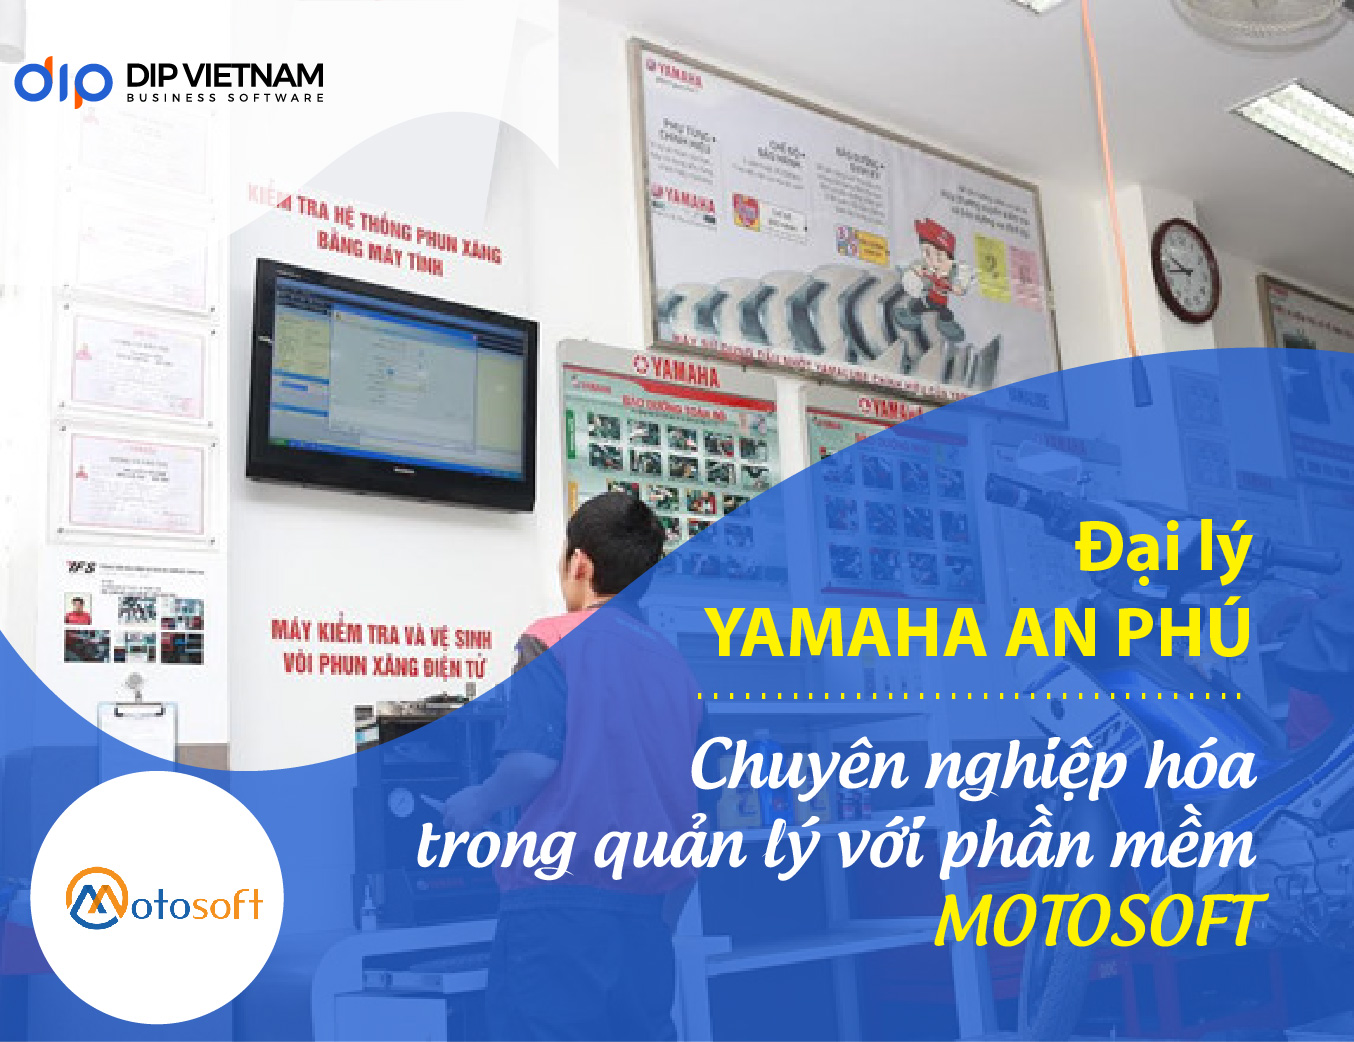 Yamaha An Phú chuyên nghiệp hóa bộ máy quản lý chuỗi cửa hàng xe máy bằng phần mềm Motosoft